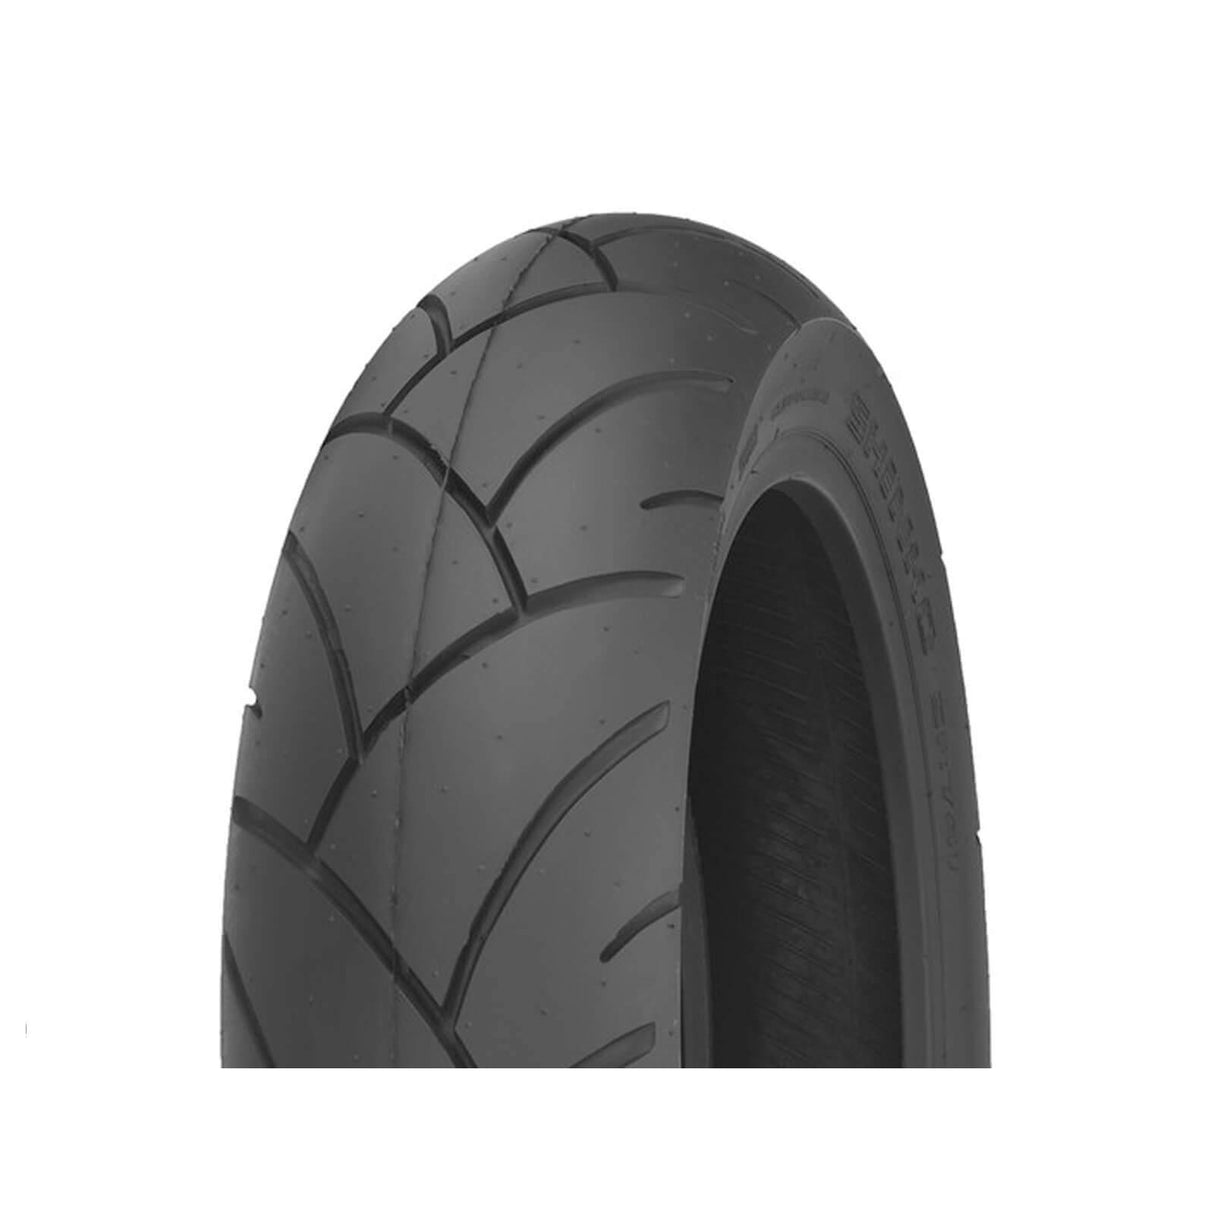 140/70-18 SR741 Shinko Rear Tyre